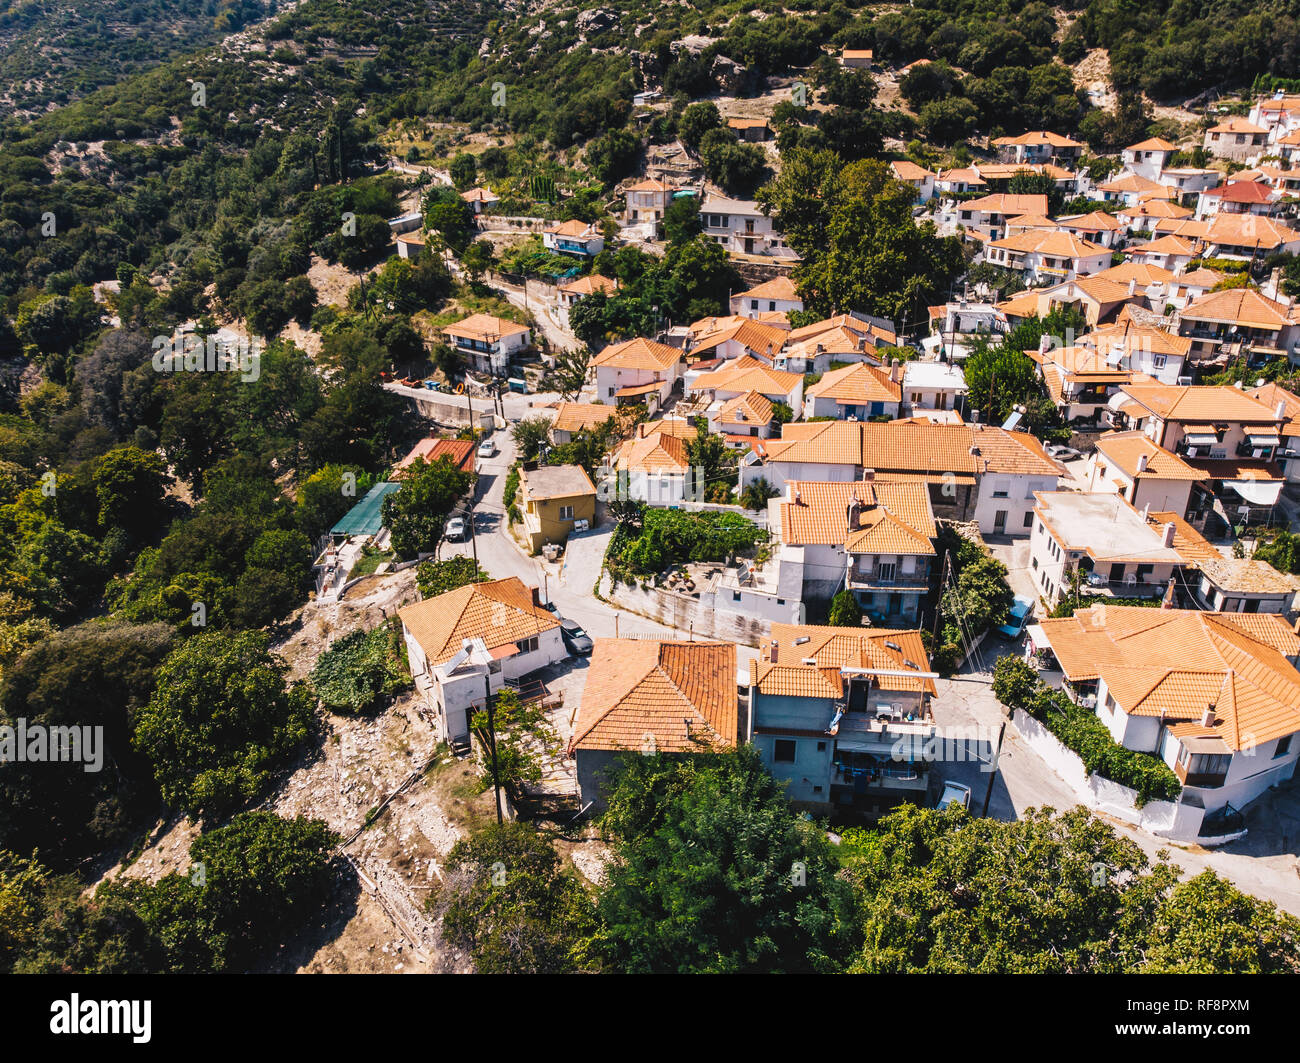 Vue aérienne de Maries Village traditionnel dans le centre de Thassos, île grecque de la mer Égée Banque D'Images